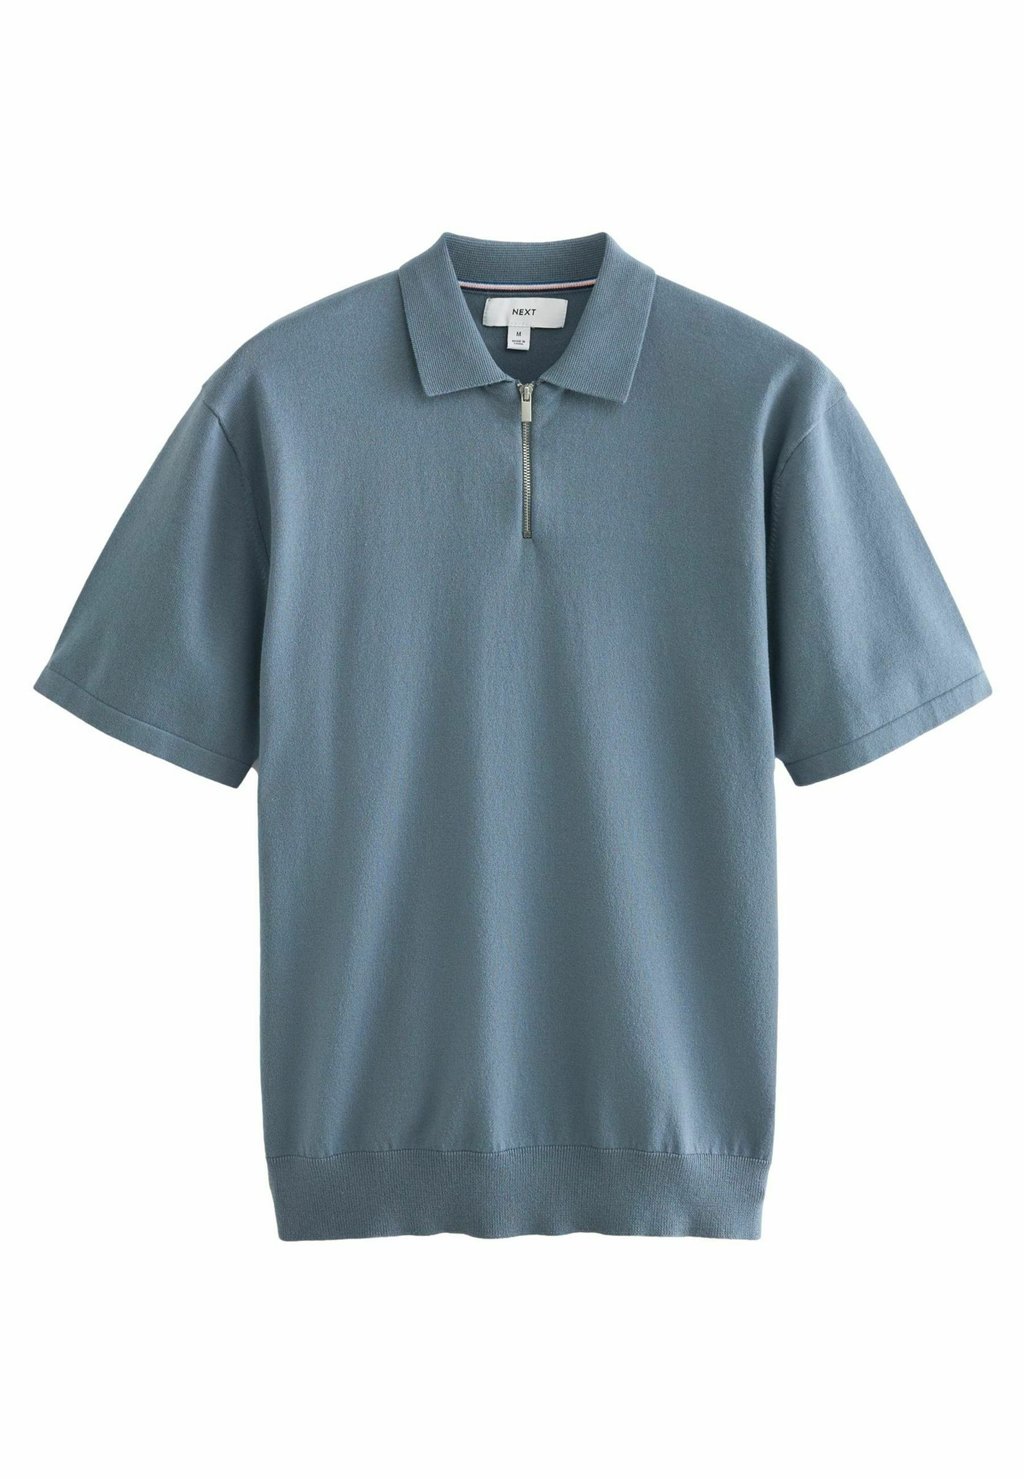 Рубашка-поло REGULAR FIT Next, синий рубашка поло regular fit next цвет navy camera